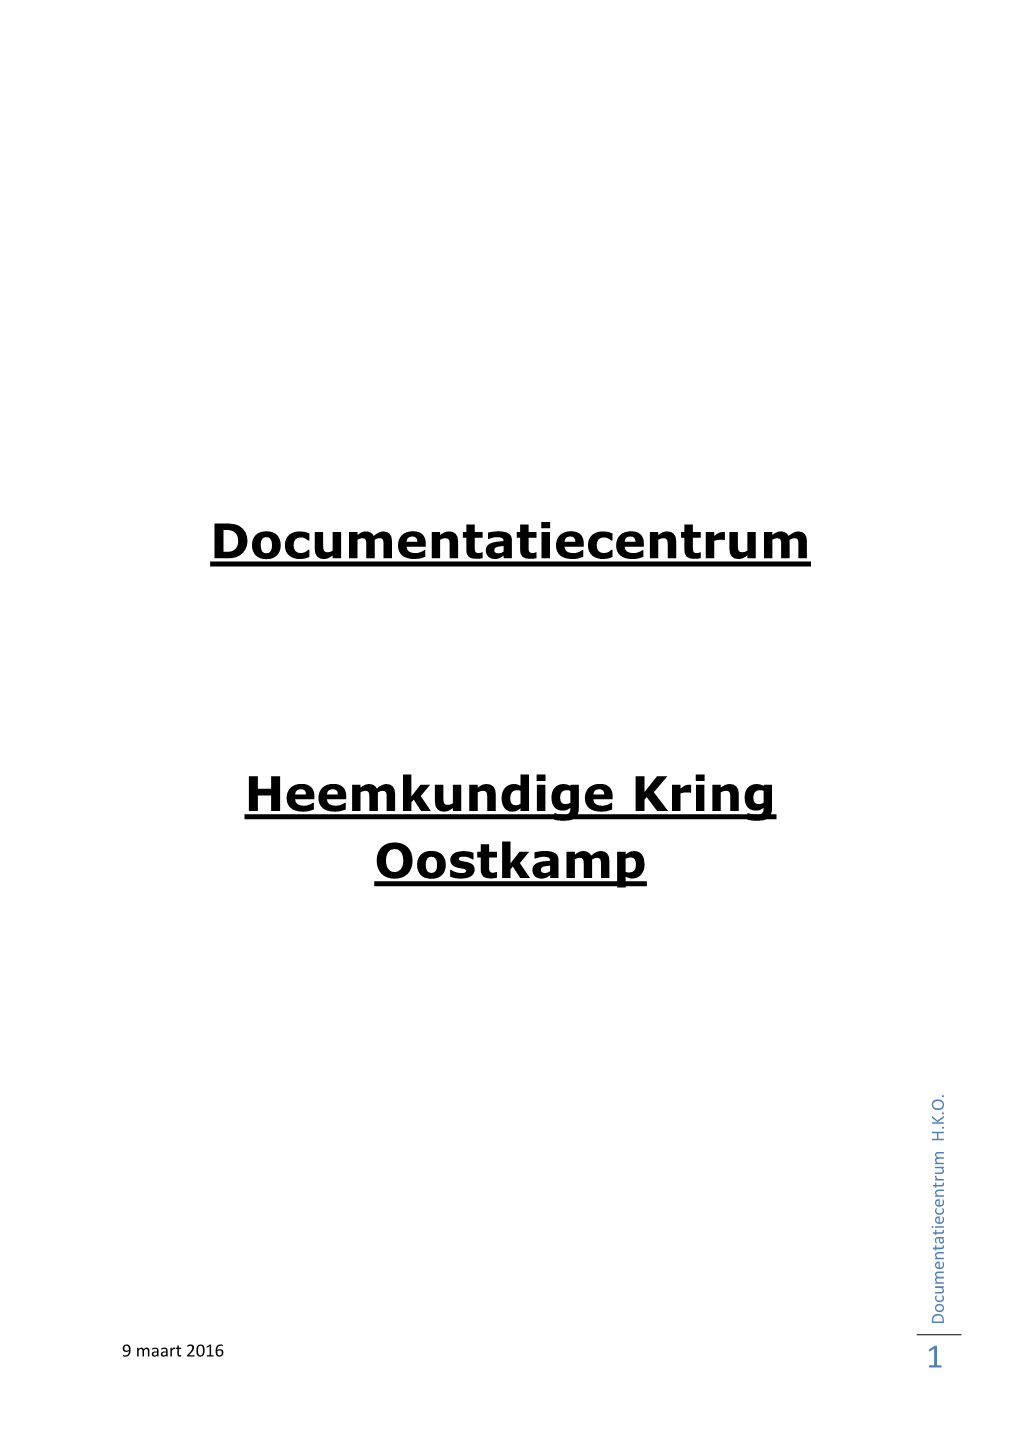 Documentatiecentrum Heemkundige Kring Oostkamp